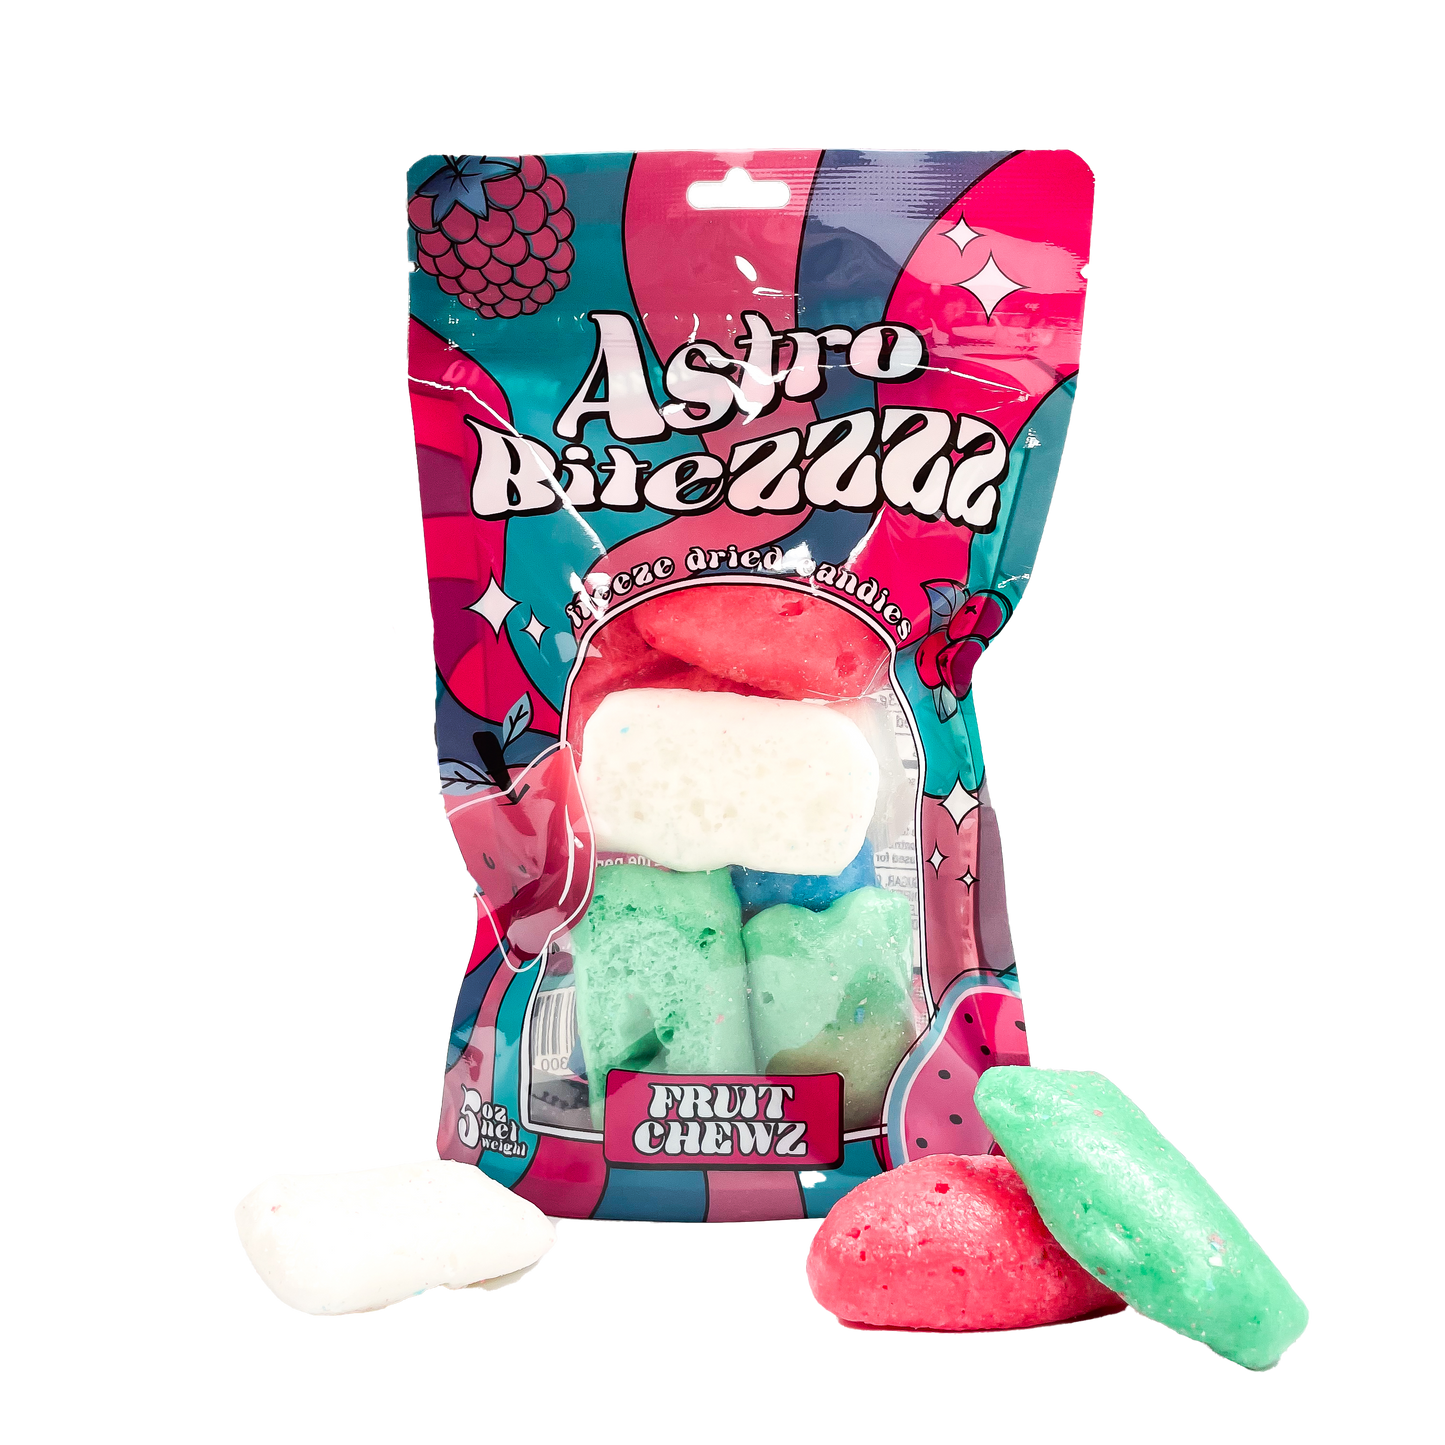 FADE Astro Bitezzzz Freeze Dried Candies